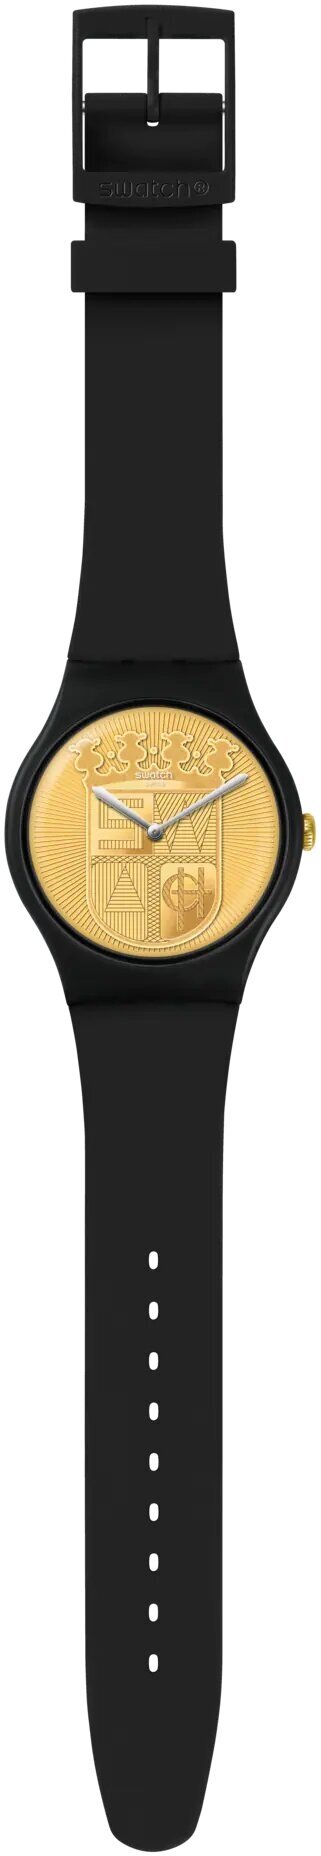 Наручные часы swatch suob170, черный